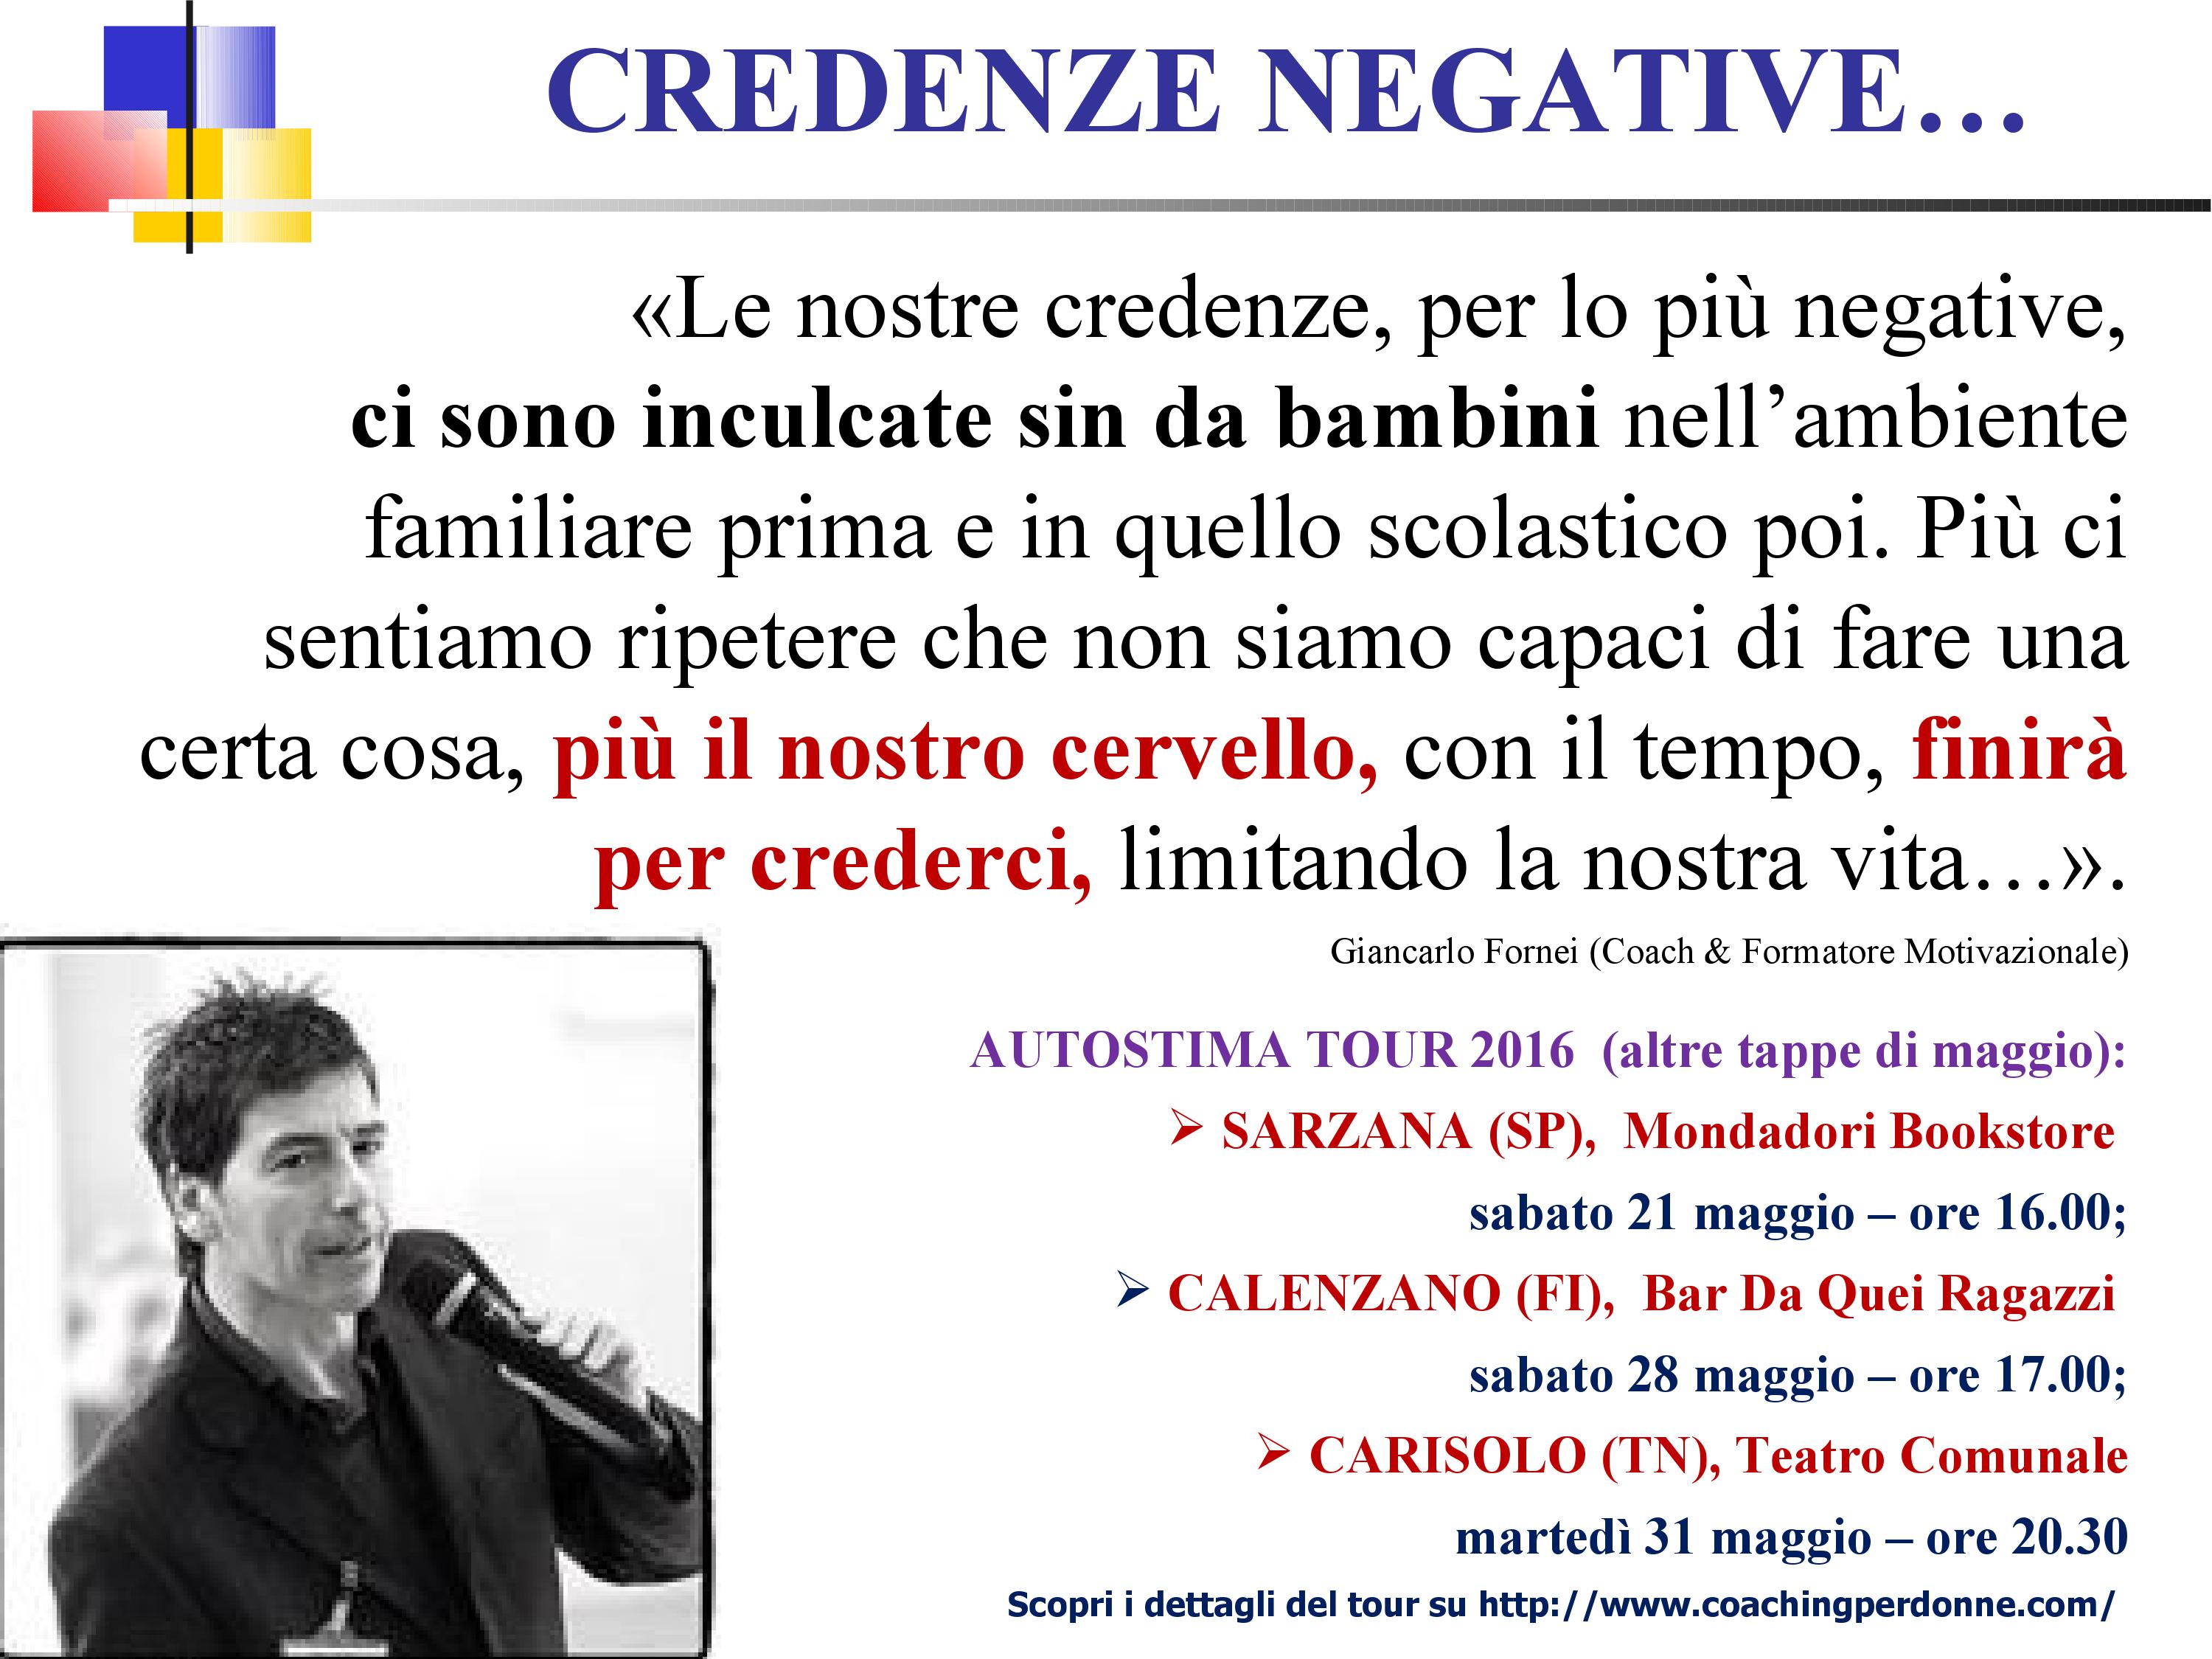 CREDENZE NEGATIVE - una frase del coach motivazionale Giancarlo Fornei (15 maggio 2016)